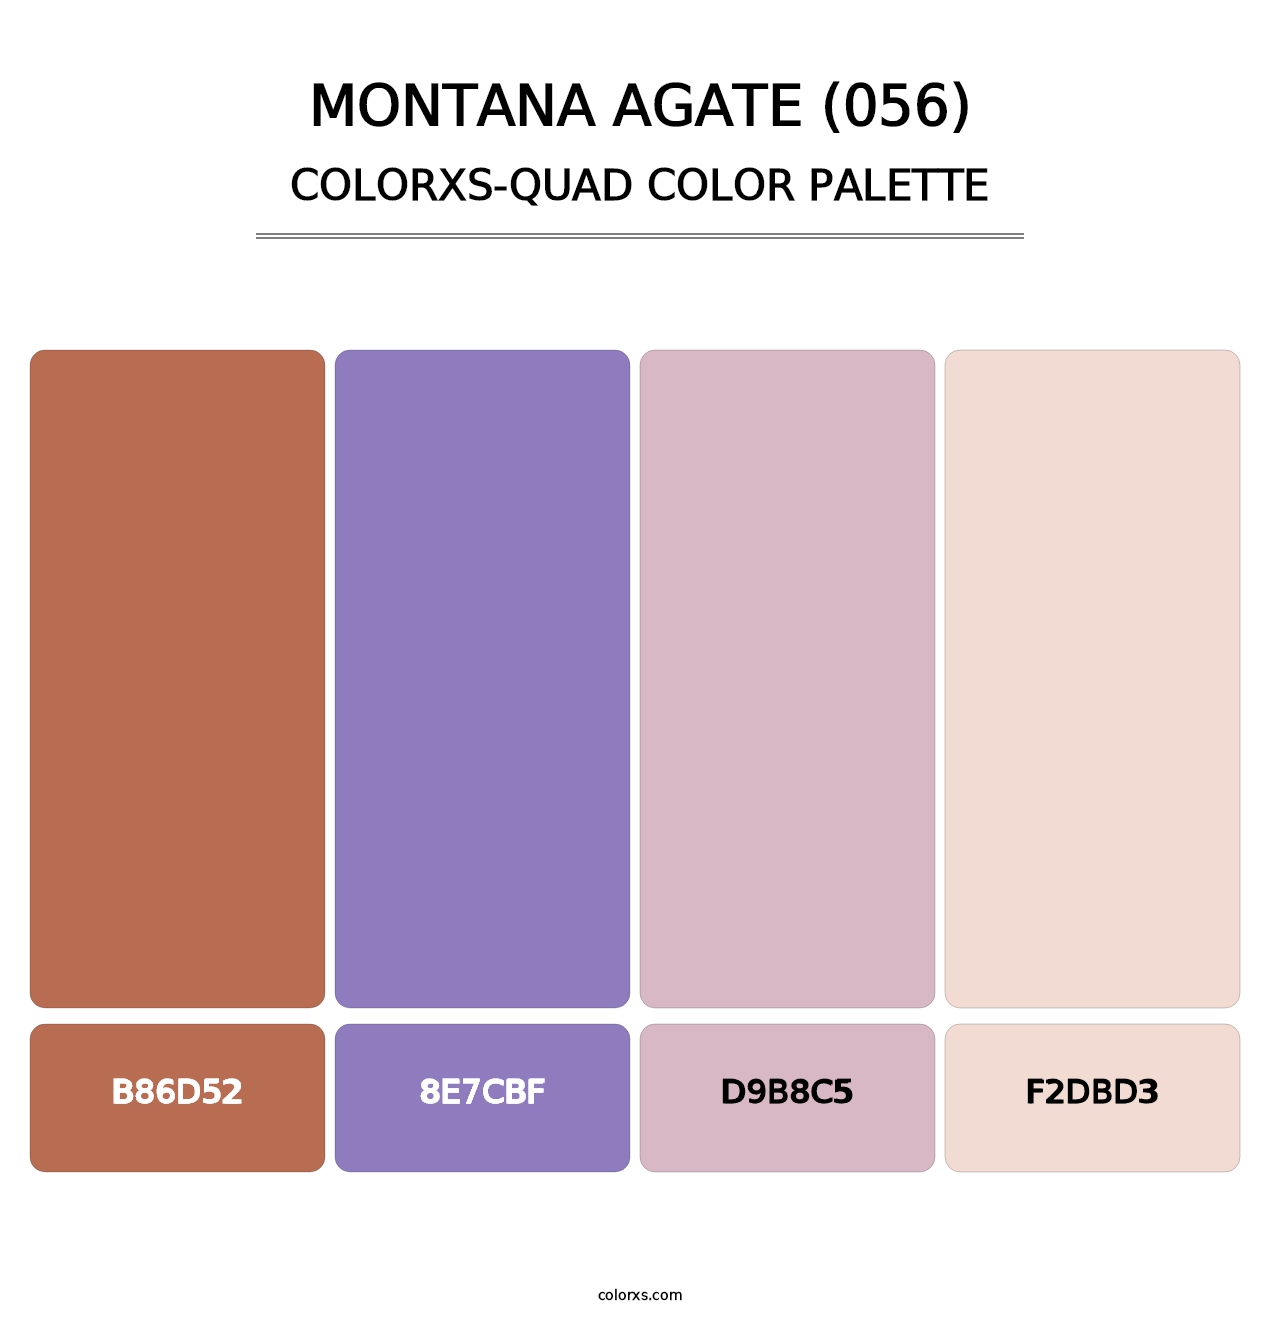 Montana Agate (056) - Colorxs Quad Palette